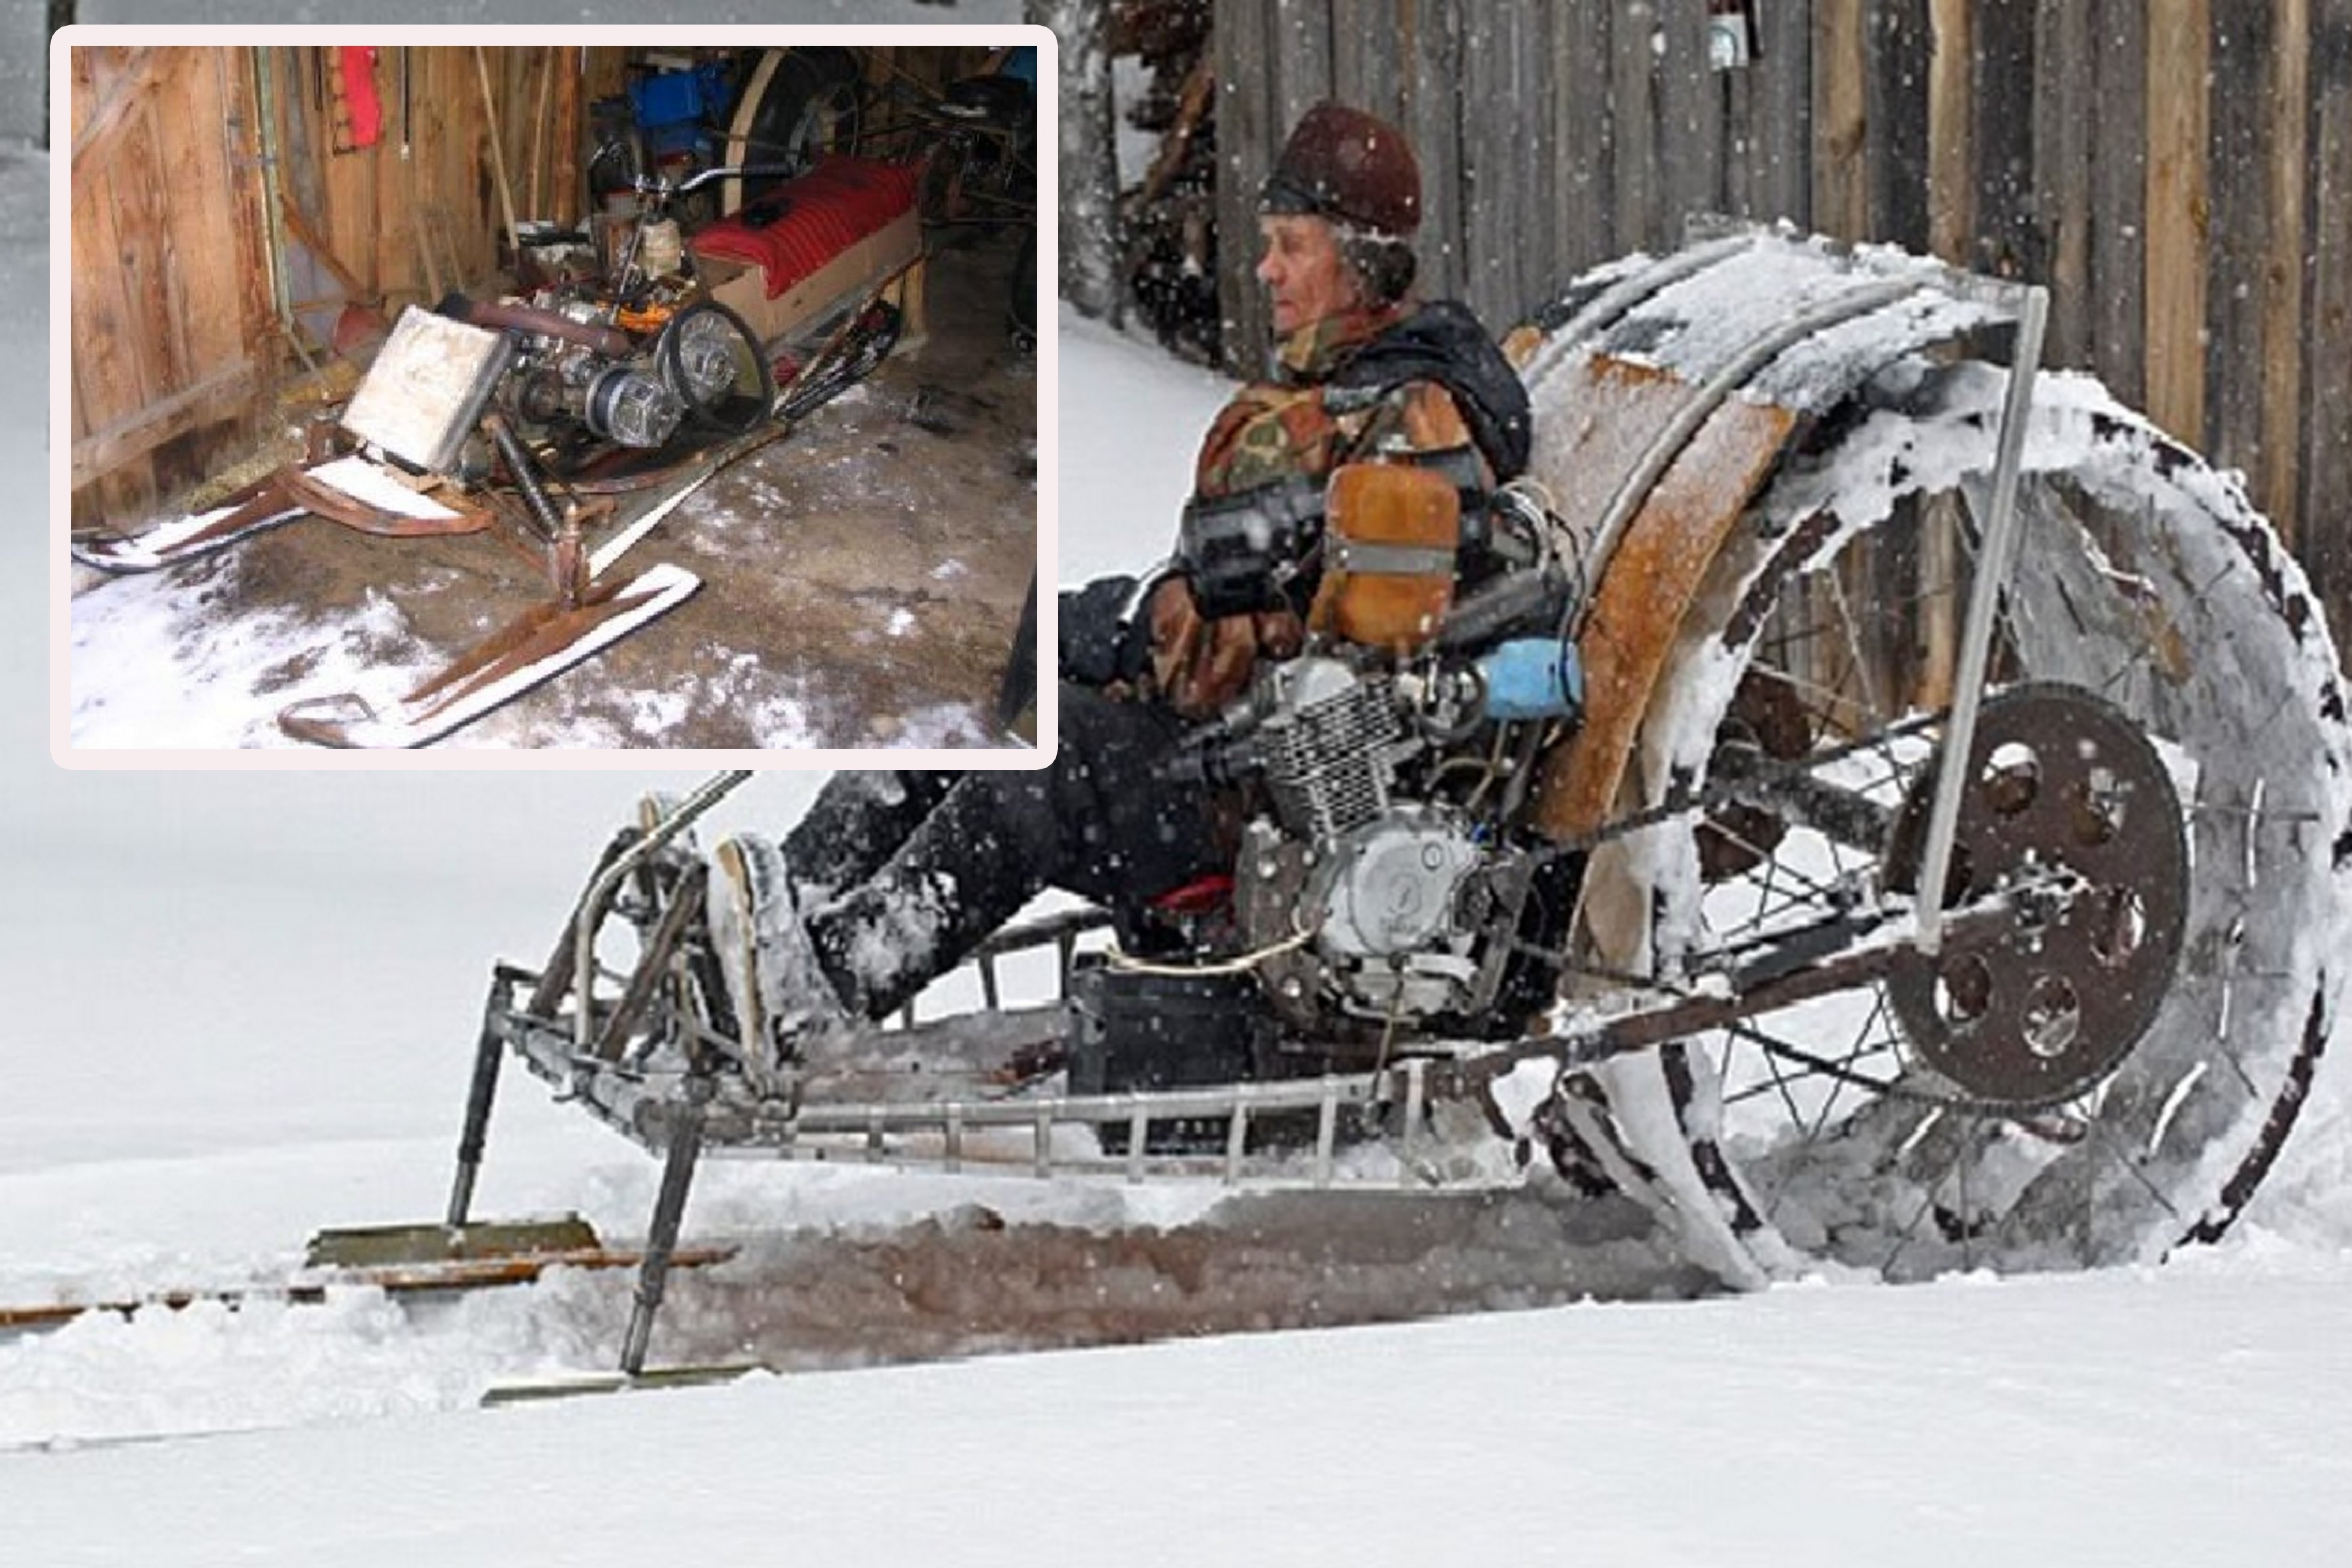 Самодельные снегоходы на базе отечественных мотоциклов «минск», иж, «урал» и мотоблоков